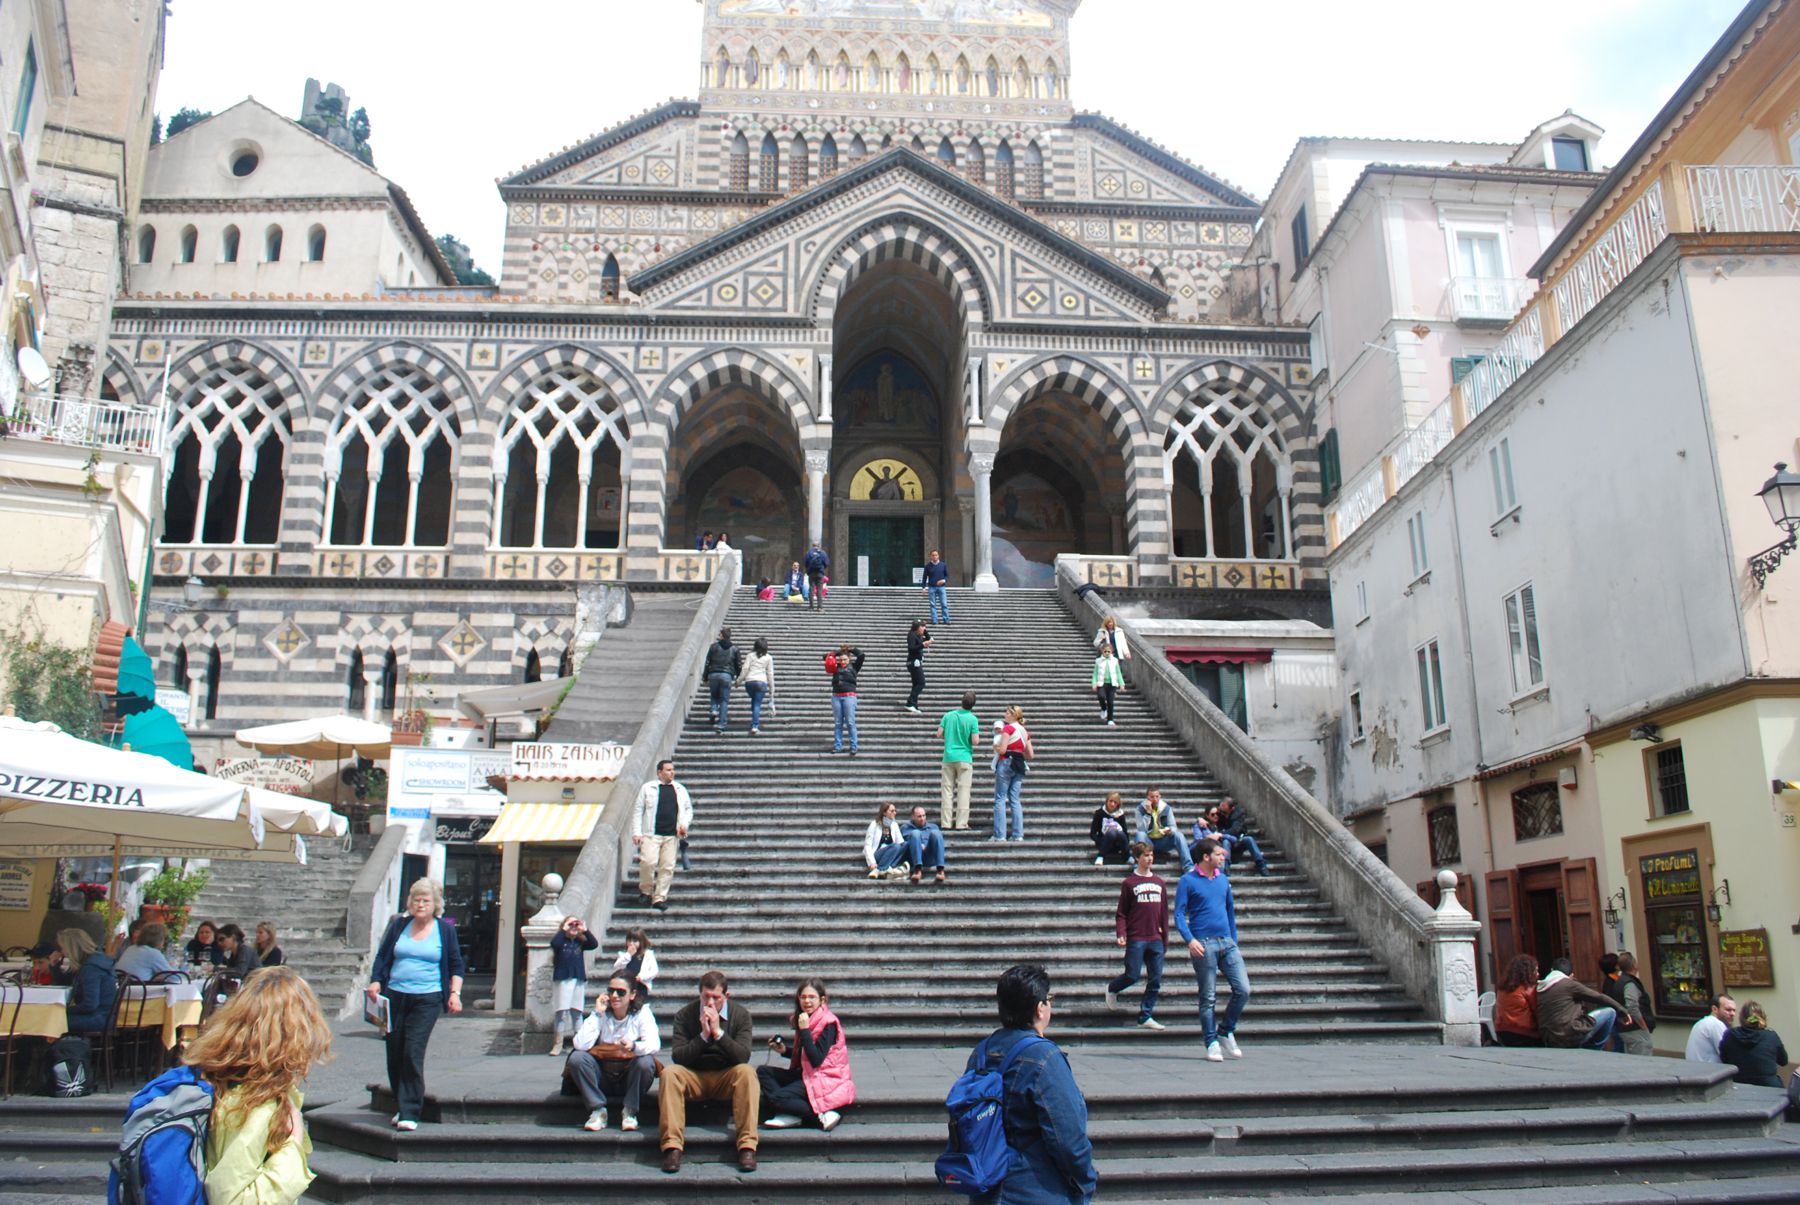 Duomo di Amalfi (Amalfi Cathedral )